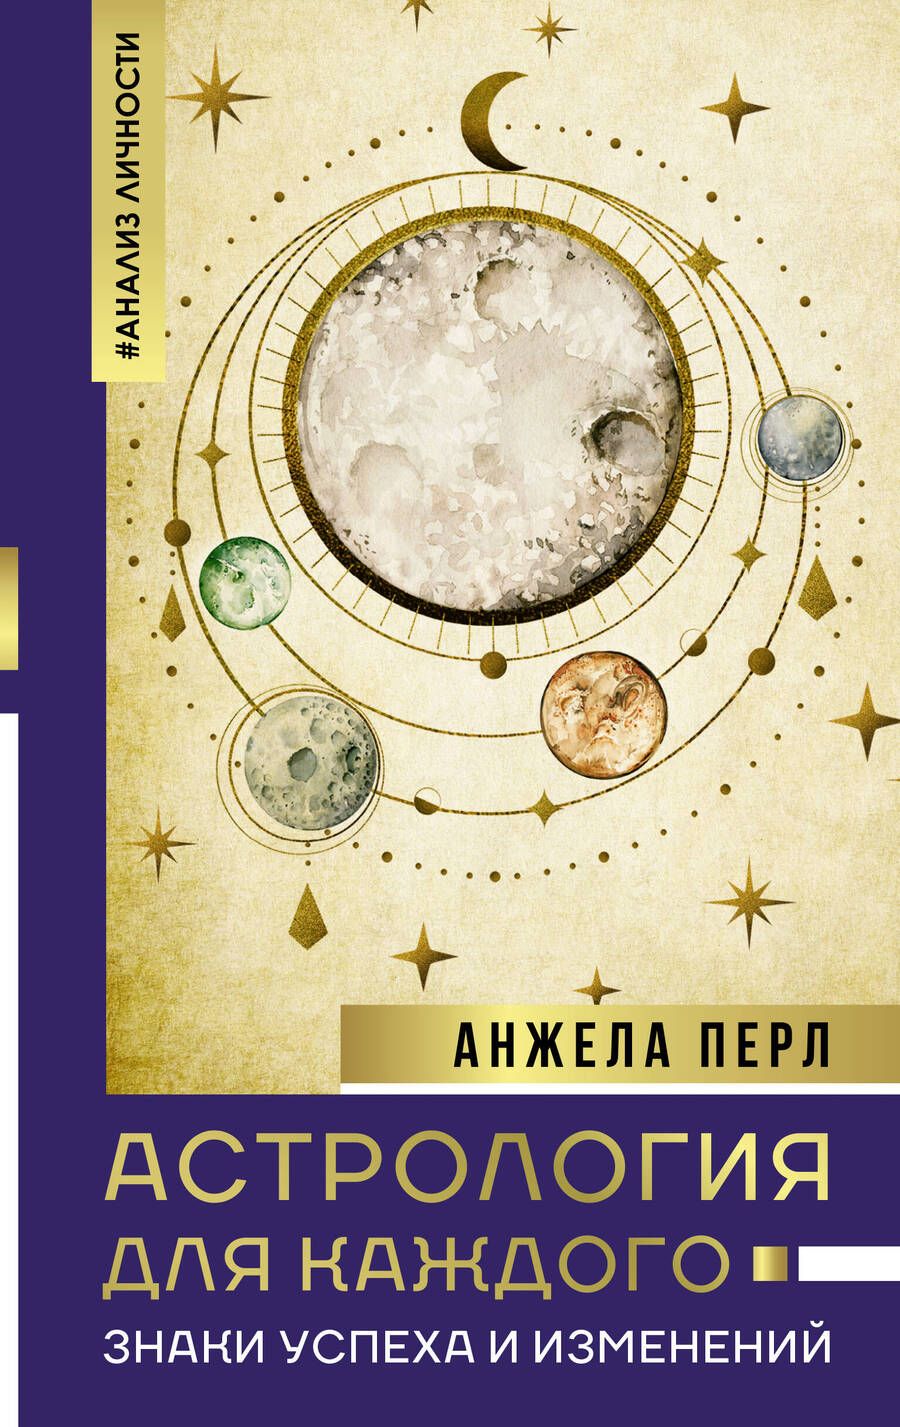 Обложка книги "Перл: Астрология для каждого. Знаки успеха и изменений"